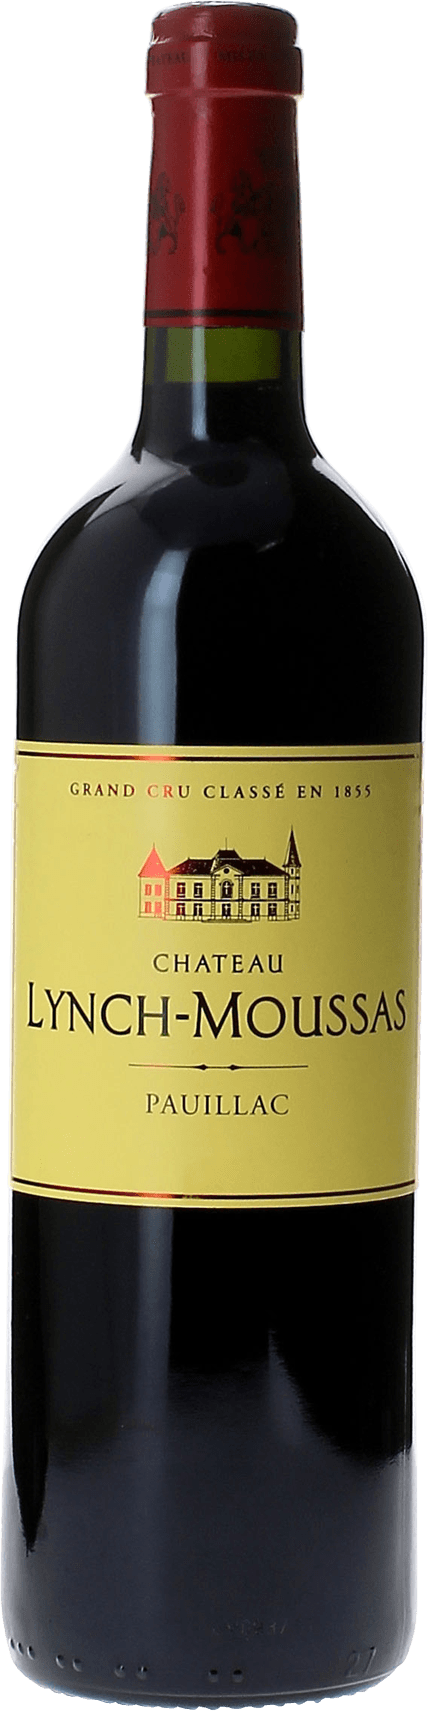 Lynch moussas 1993  Pauillac, Bordeaux rouge